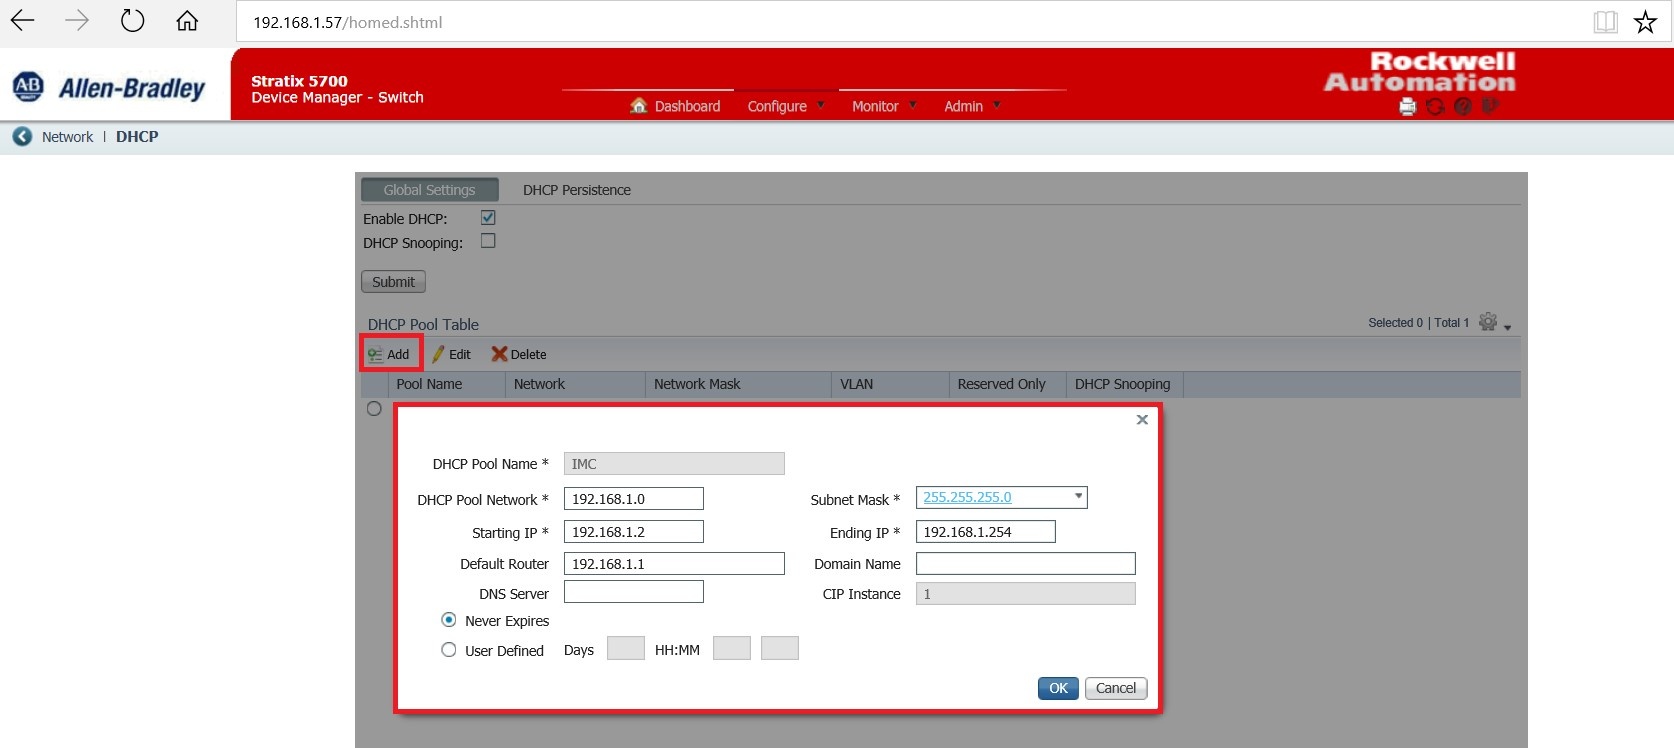 Interfaz para configurar el DHCP en el Device Manager